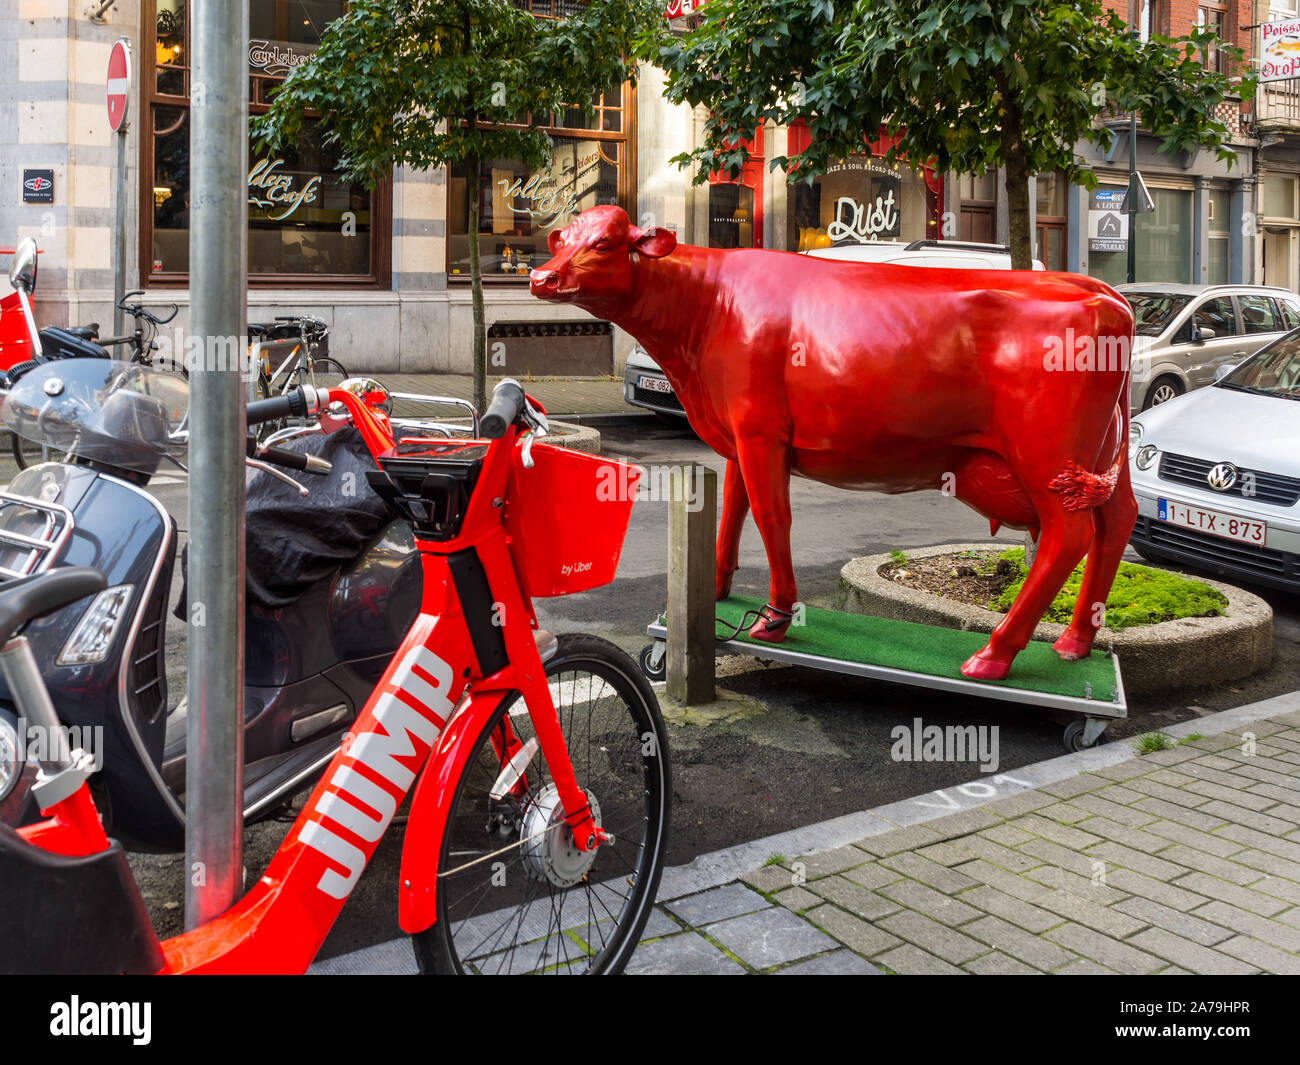 Life-size Red cow sculpture sur coin de rue de Saint Gilles, Bruxelles, Belgique. Banque D'Images